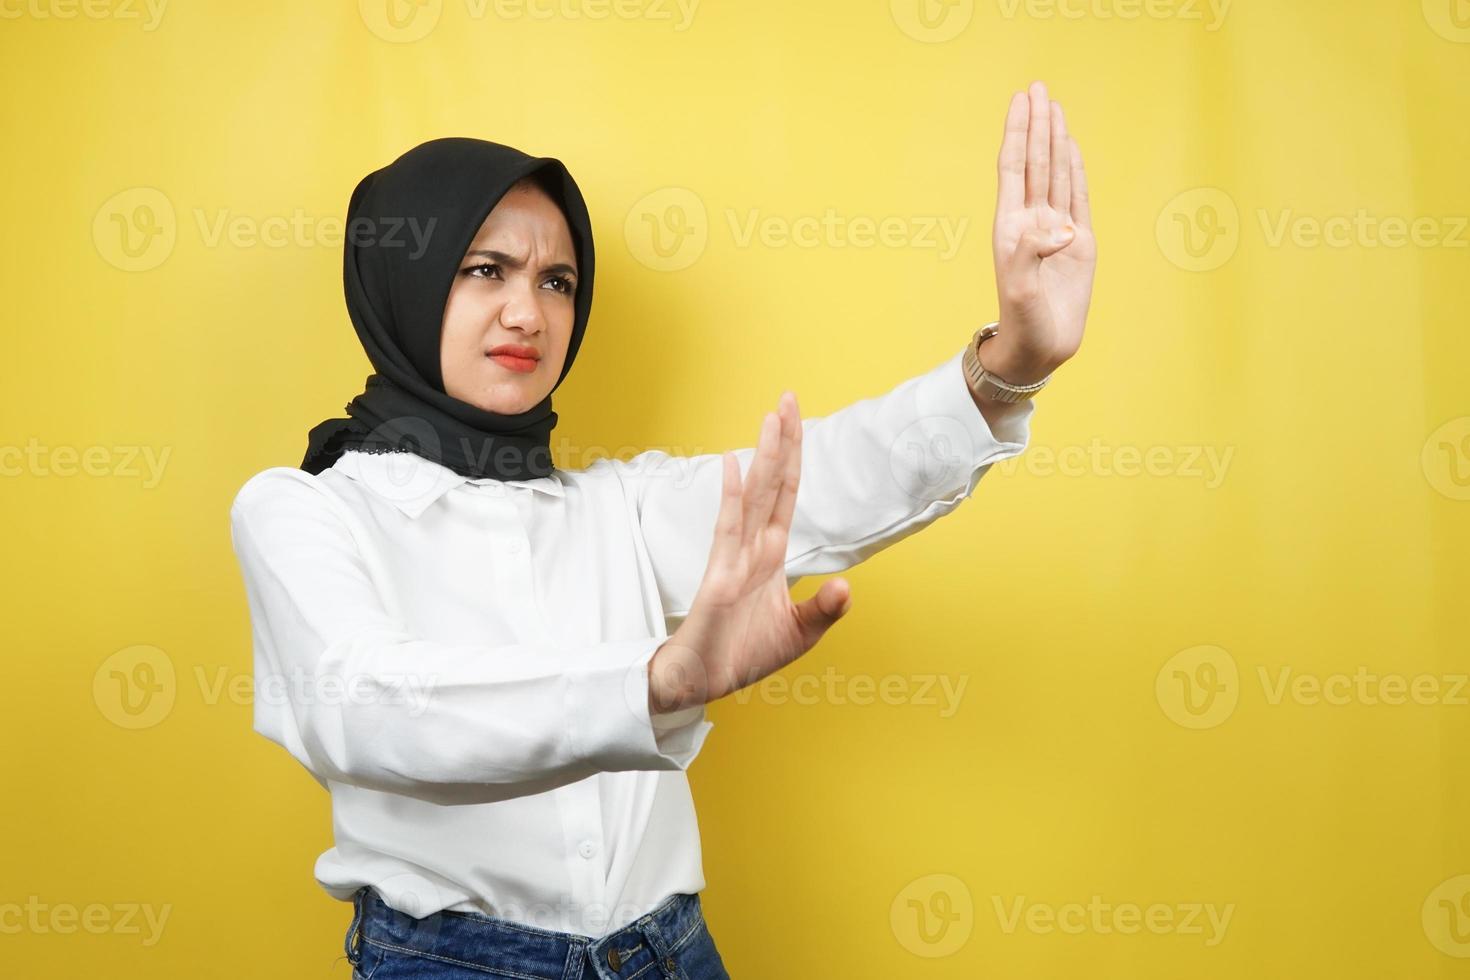 Hermosa joven musulmana asiática con la mano rechazando algo, la mano deteniendo algo, disgustando algo en el espacio vacío, aislado sobre fondo amarillo foto